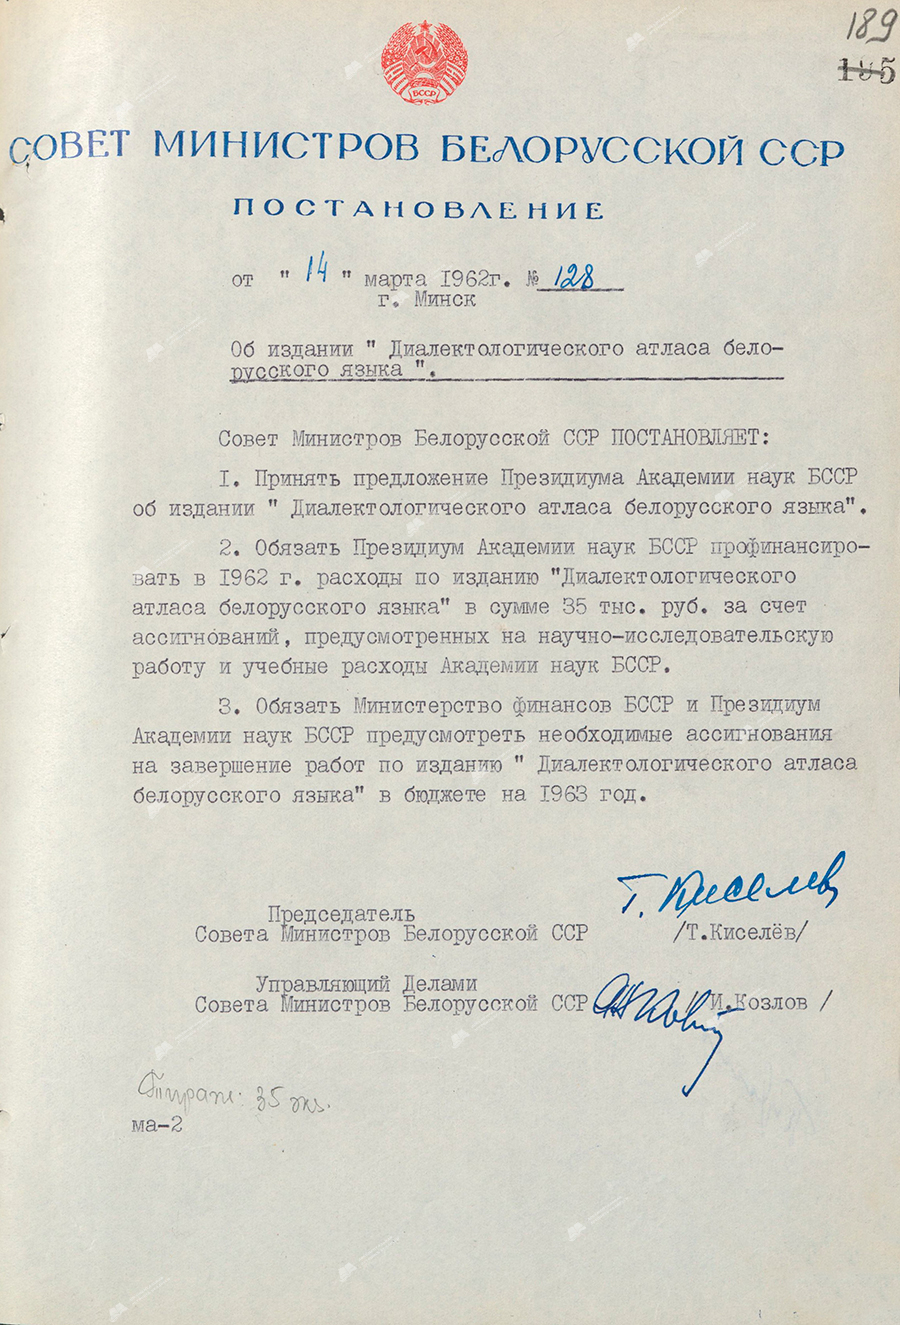 Beschluss Nr. 128 des Ministerrats der BSSR «Über die Veröffentlichung des «Dialektologischen Atlas der belarussischen Sprache»-с. 0